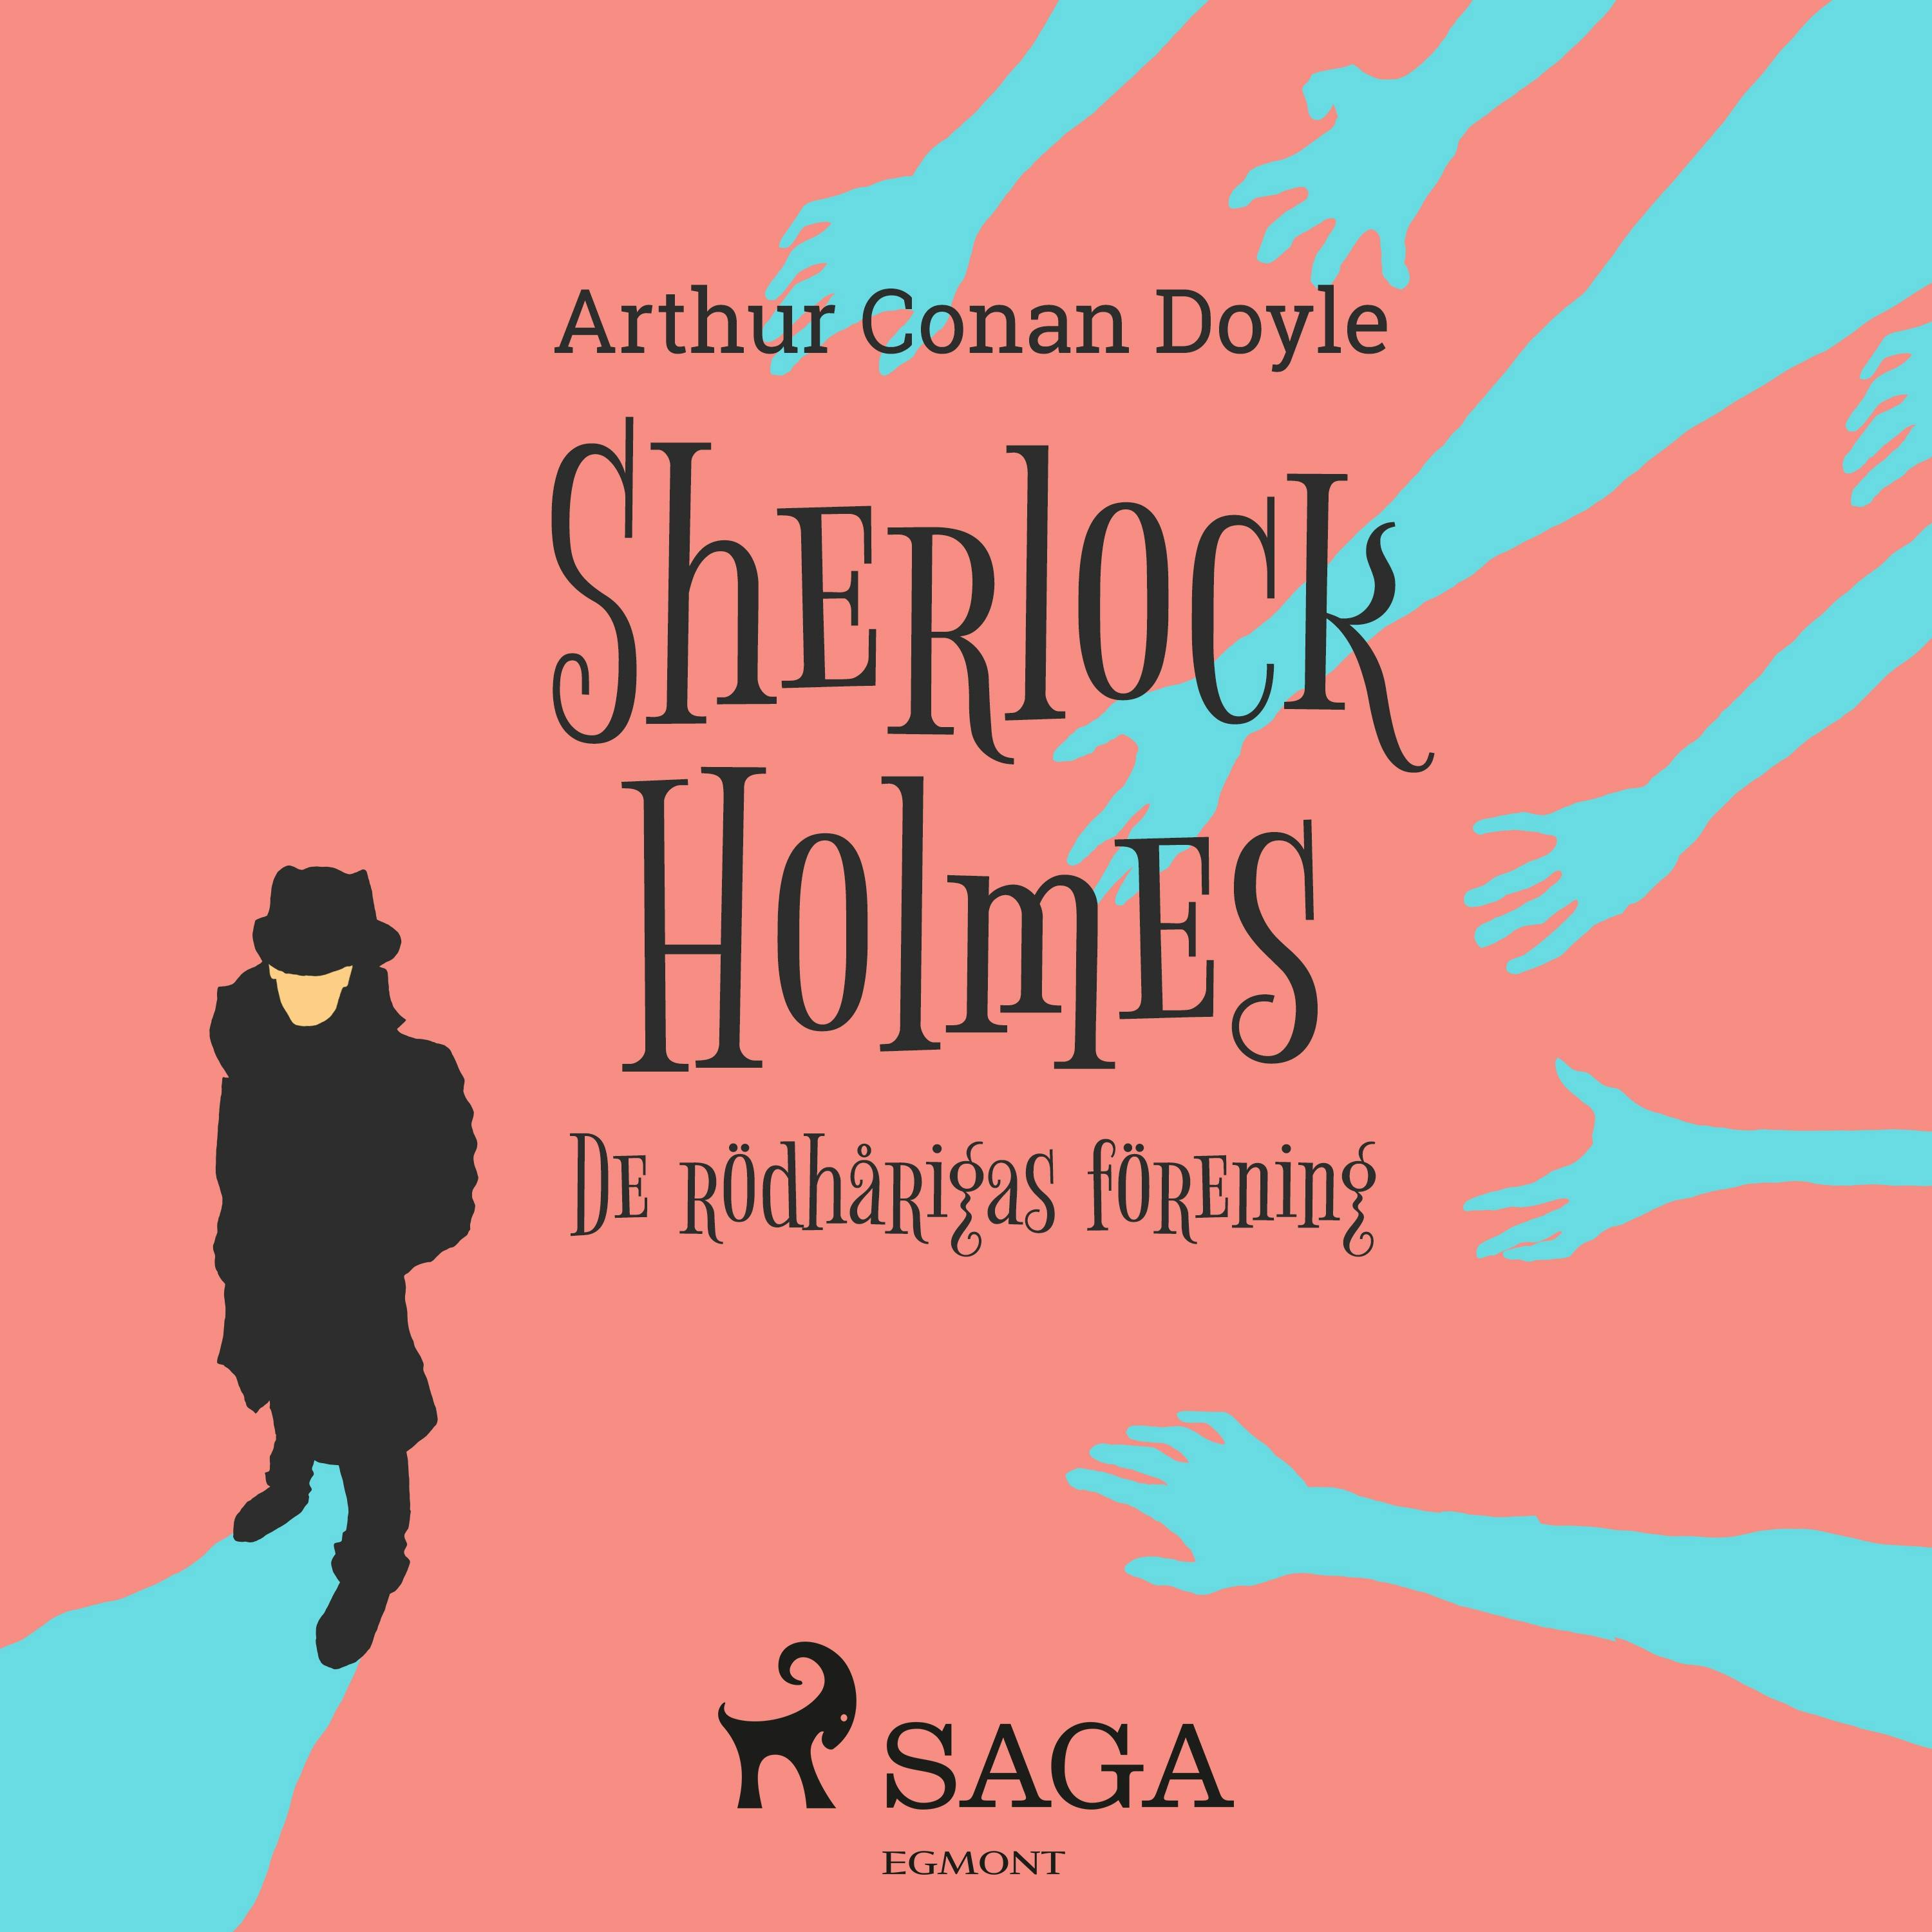 De rödhårigas förening - Sir Arthur Conan Doyle